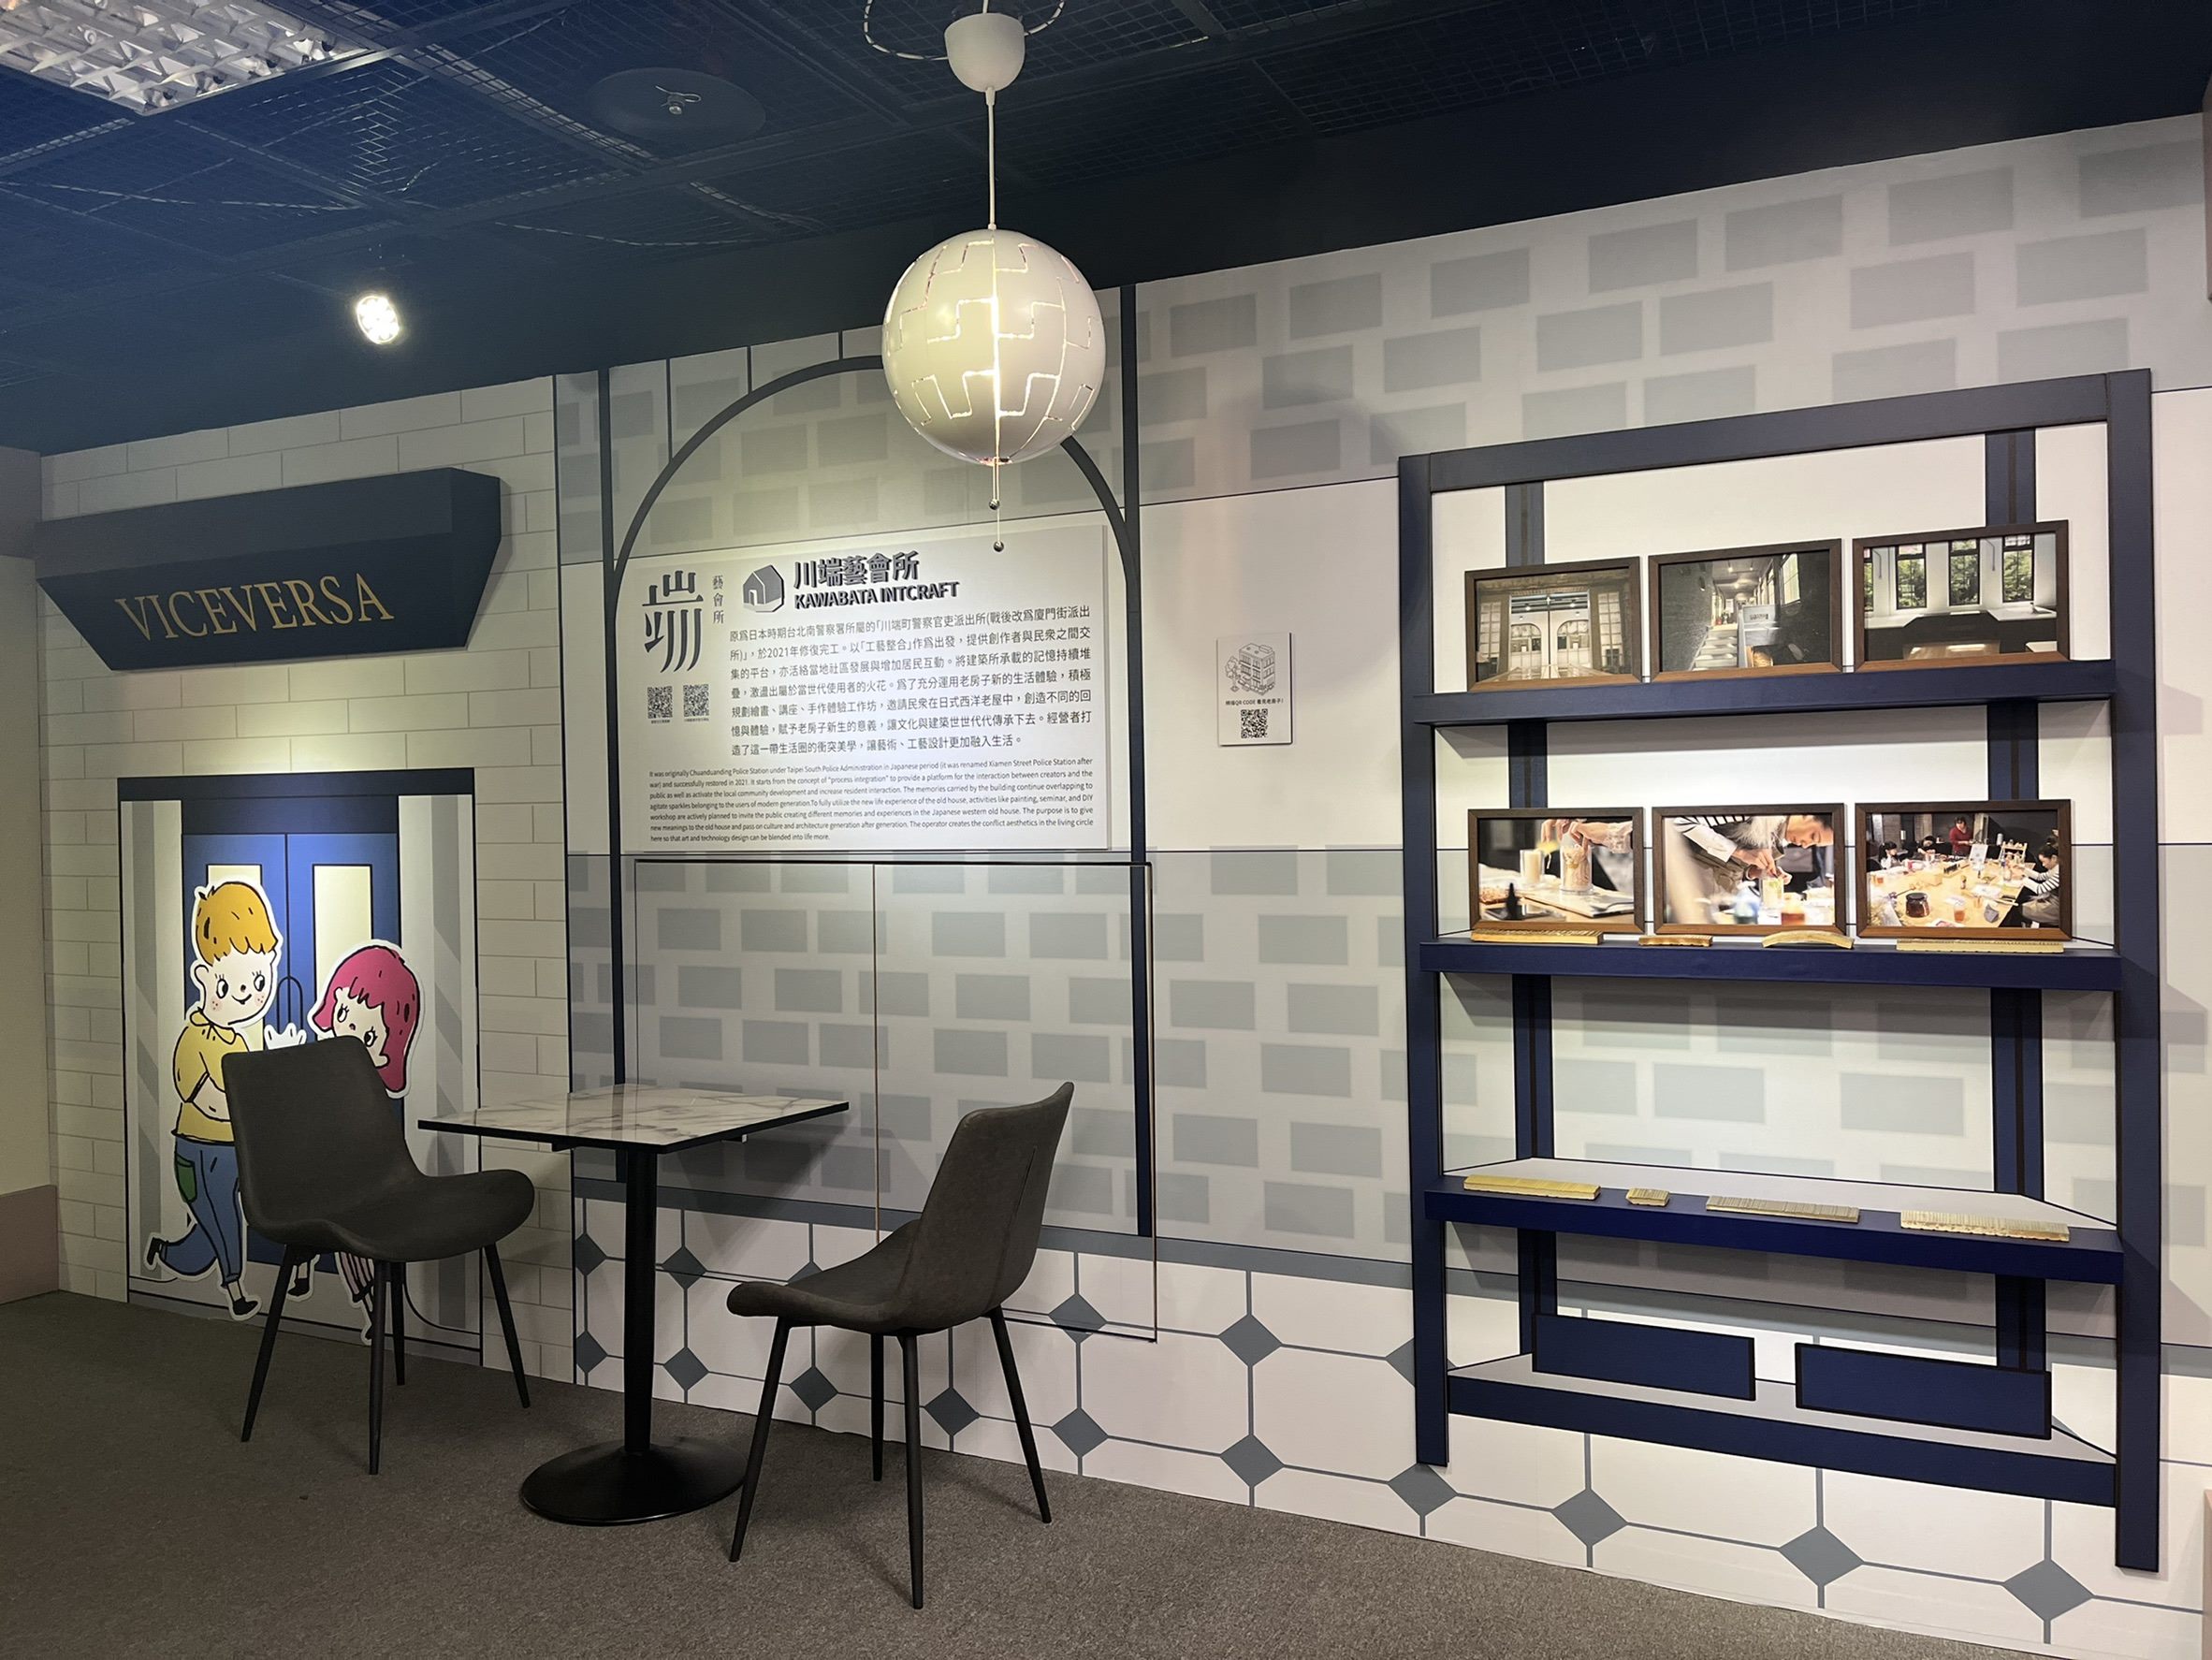 台北探索館二樓特展廳呈現食、茶、書、藝四種主題的老房子新生活，以「BaNAna阿蕉」童趣的風格模擬「老房子文化運動」再利用的案例場景。